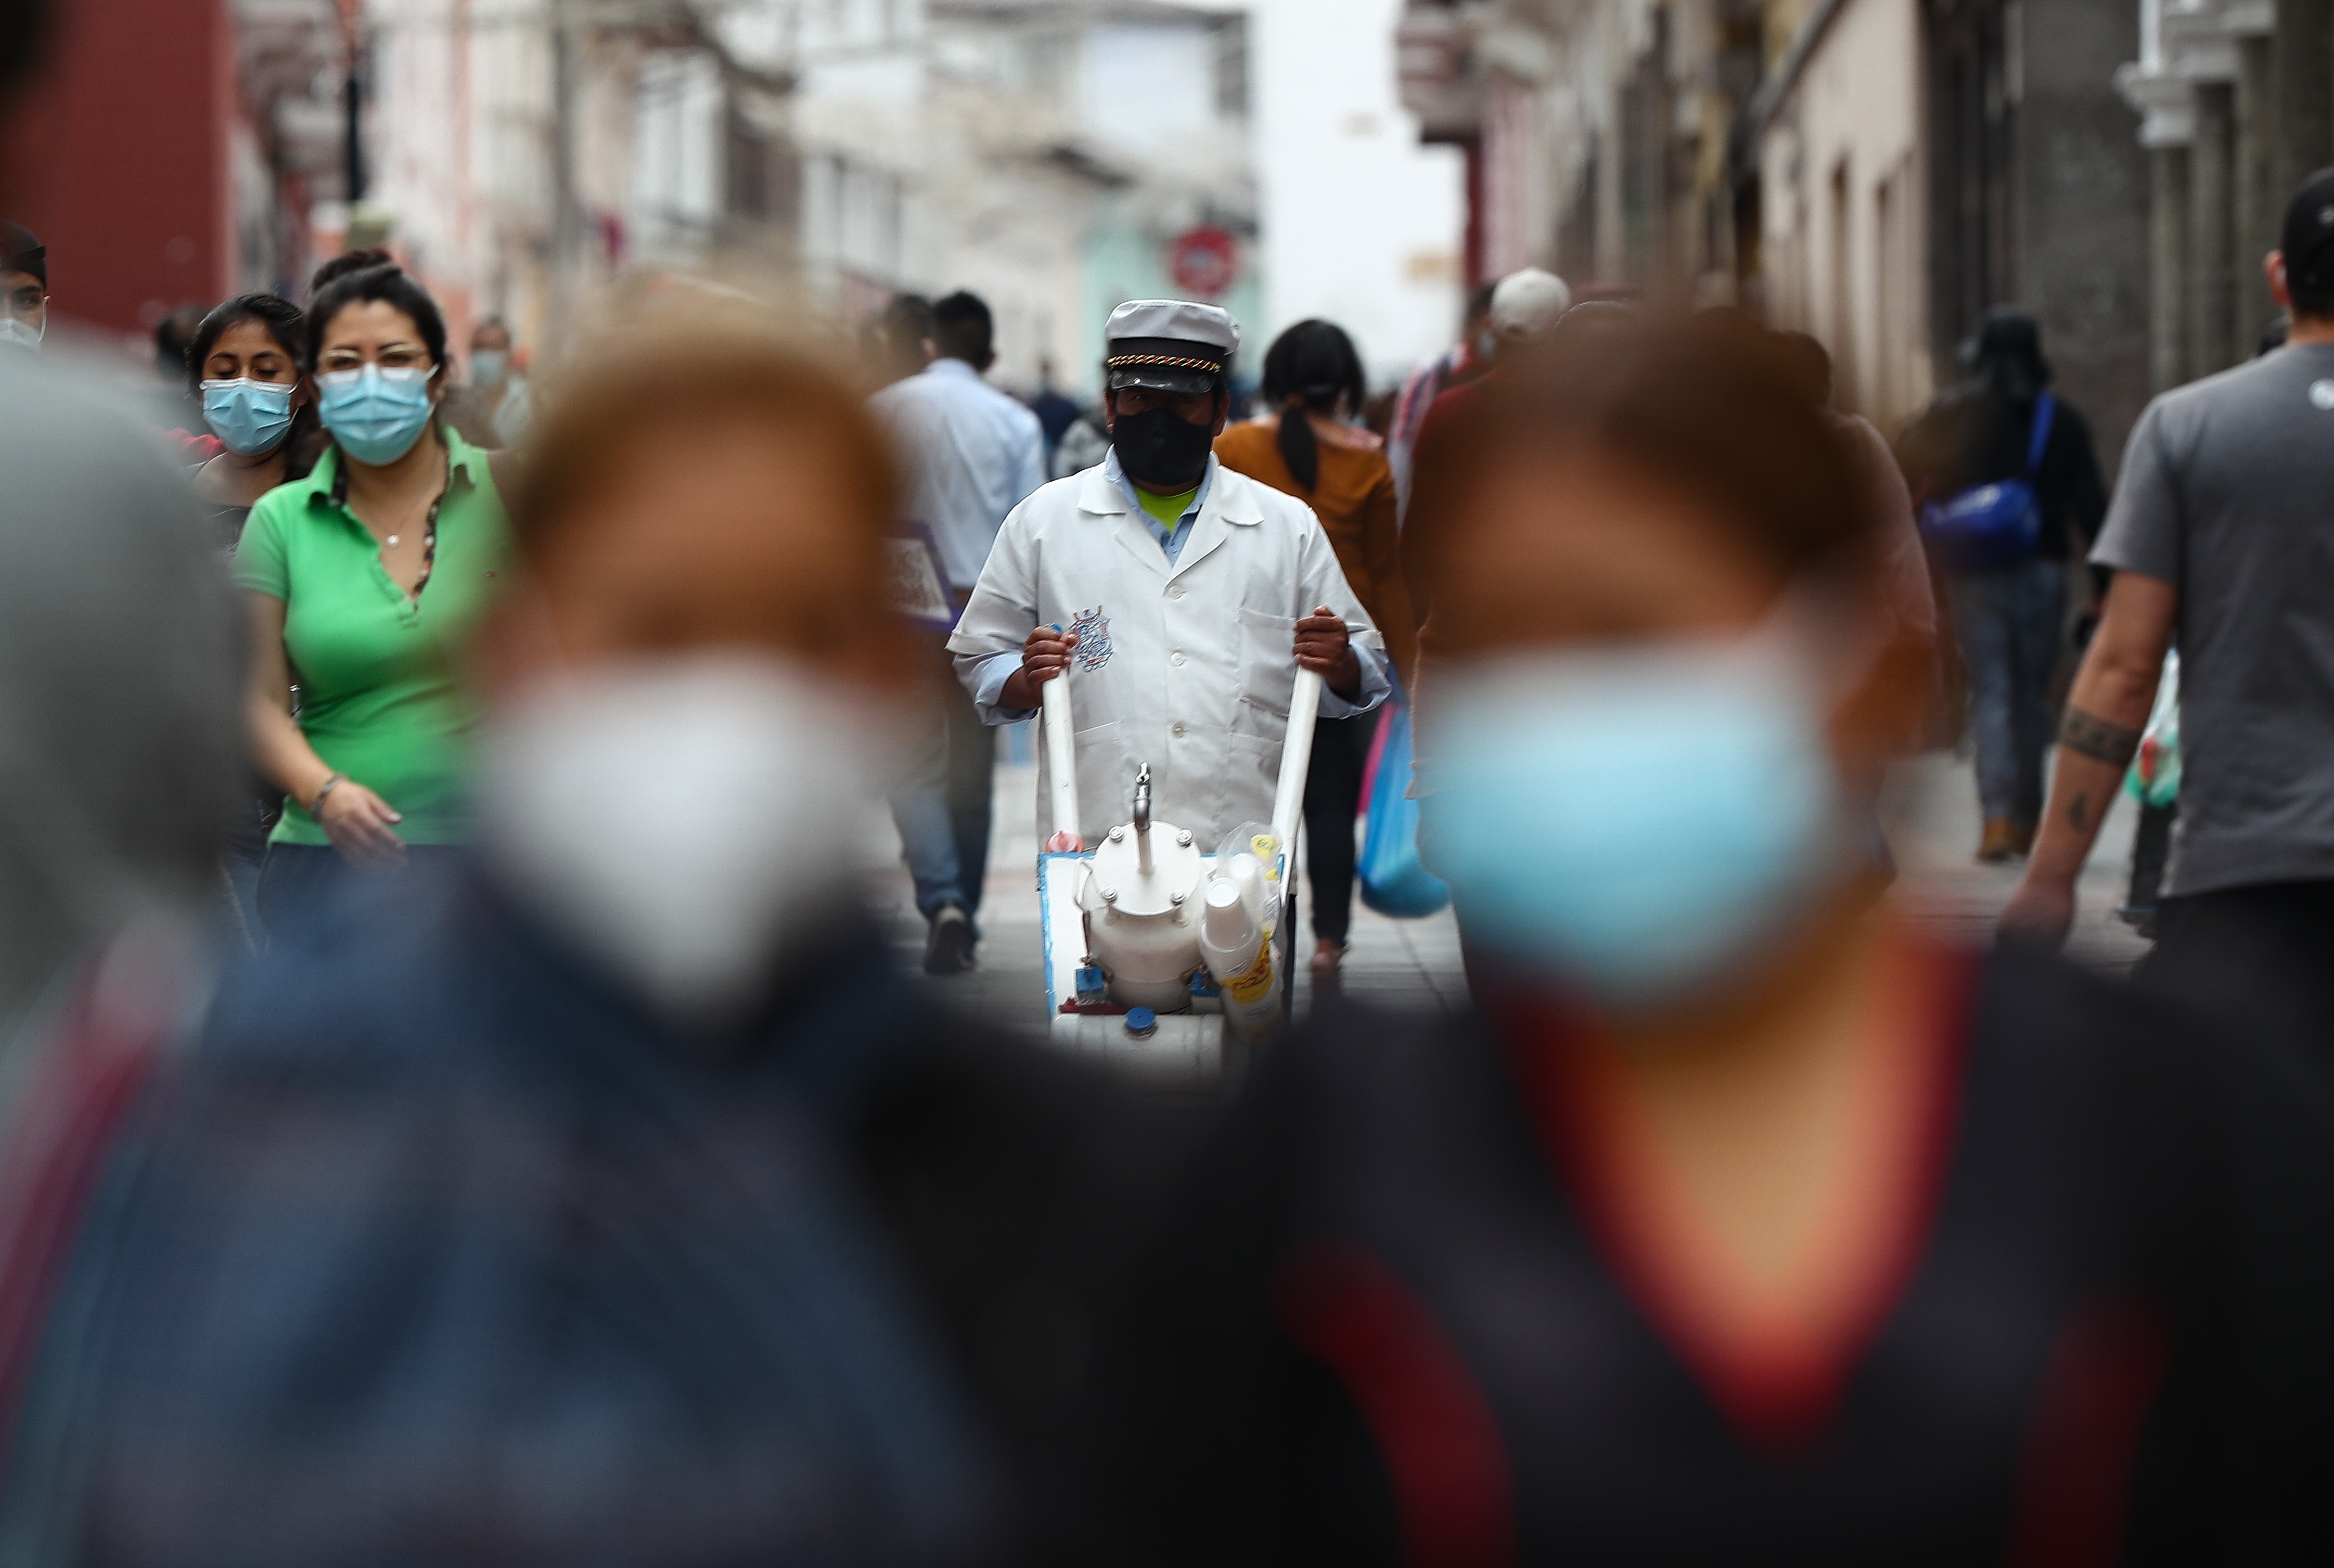 El gobierno de Lenín Moreno -Presidente saliente de Ecuador- anunció que llegó a los 2 millones de vacunados contra el COVID-19. Guillermo Lasso tiene ahora el desafío de multiplicar esa cifra para inmunizar a toda la población (EFE)